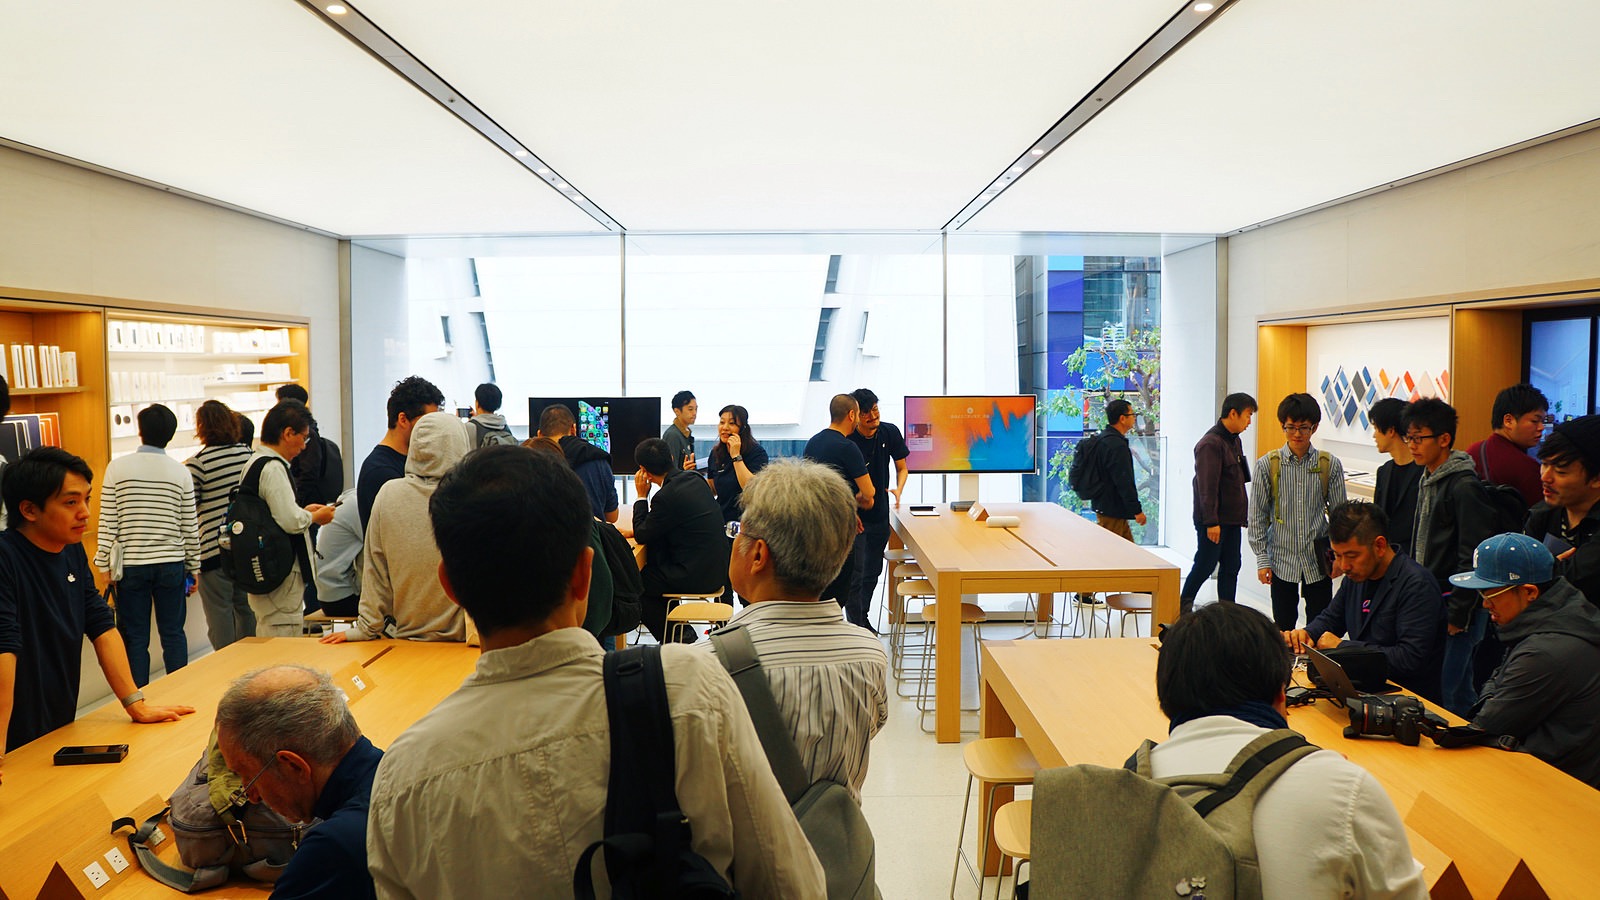 「Apple渋谷」のらせん階段